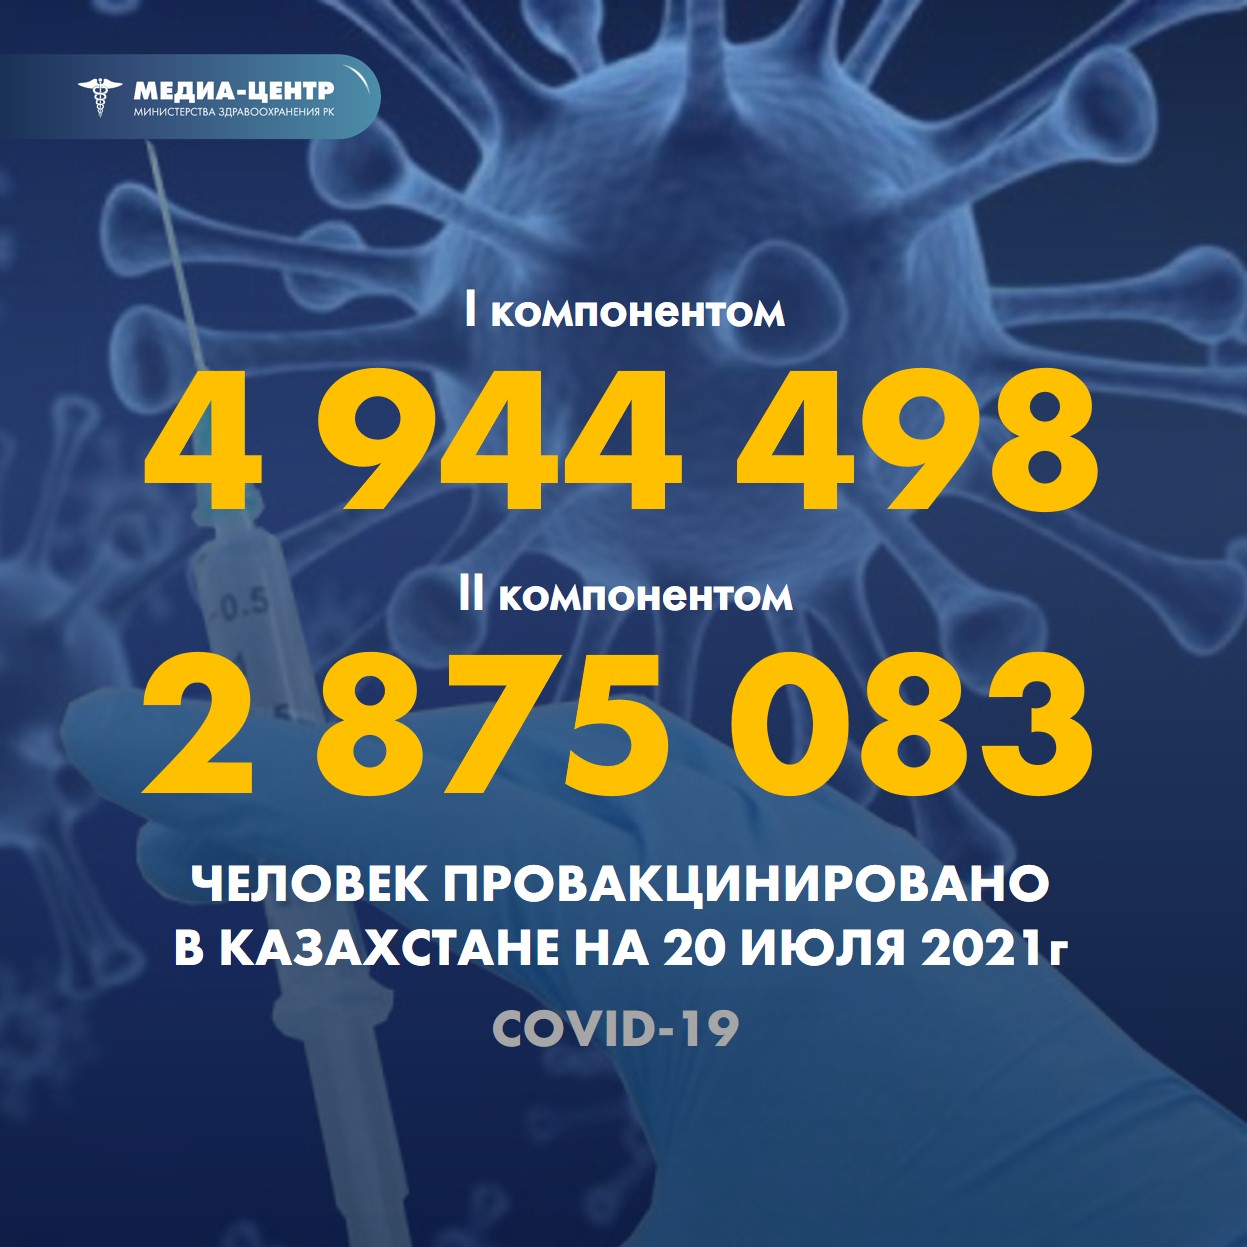 I компонентом 4 944 498 человек провакцинировано в Казахстане на 20 июля 2021 г, II компонентом 2 875 083 человека.